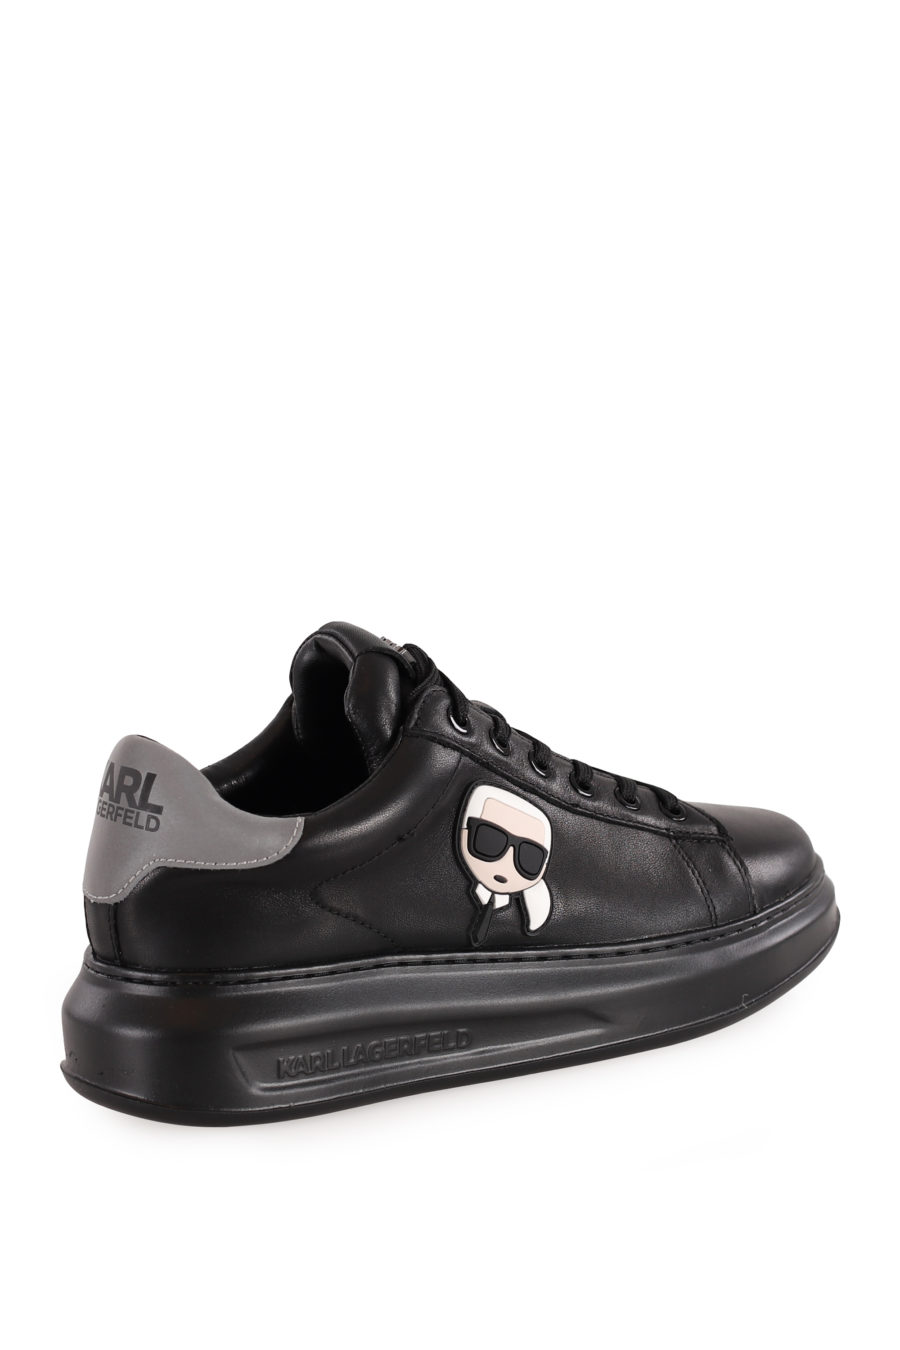 Zapatillas negras con logotipo 3D "Karl" - 1d683435e9ad6f6611257185ff888c8459e343b7